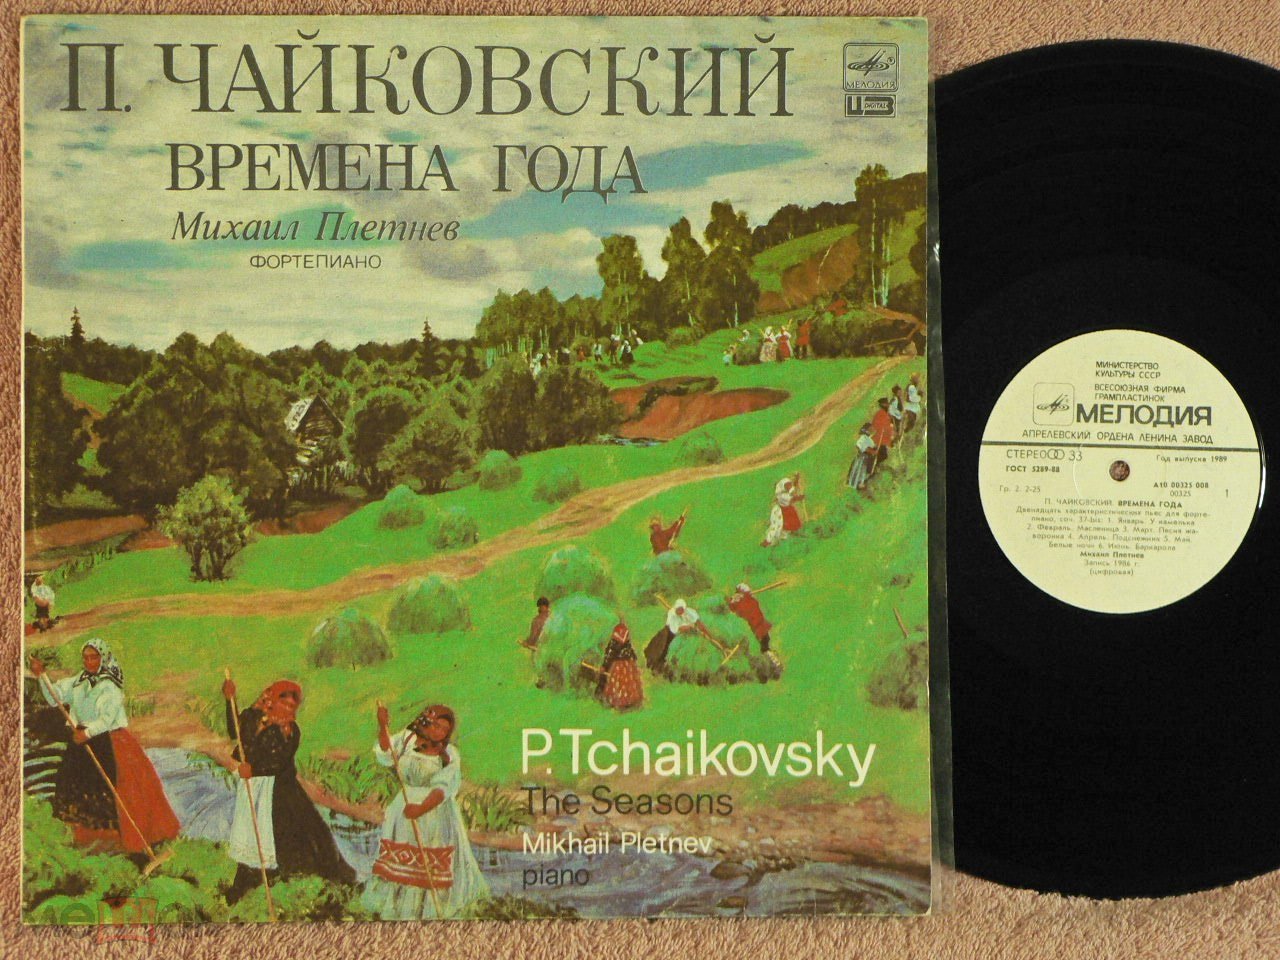 Альбом времена года Чайковского